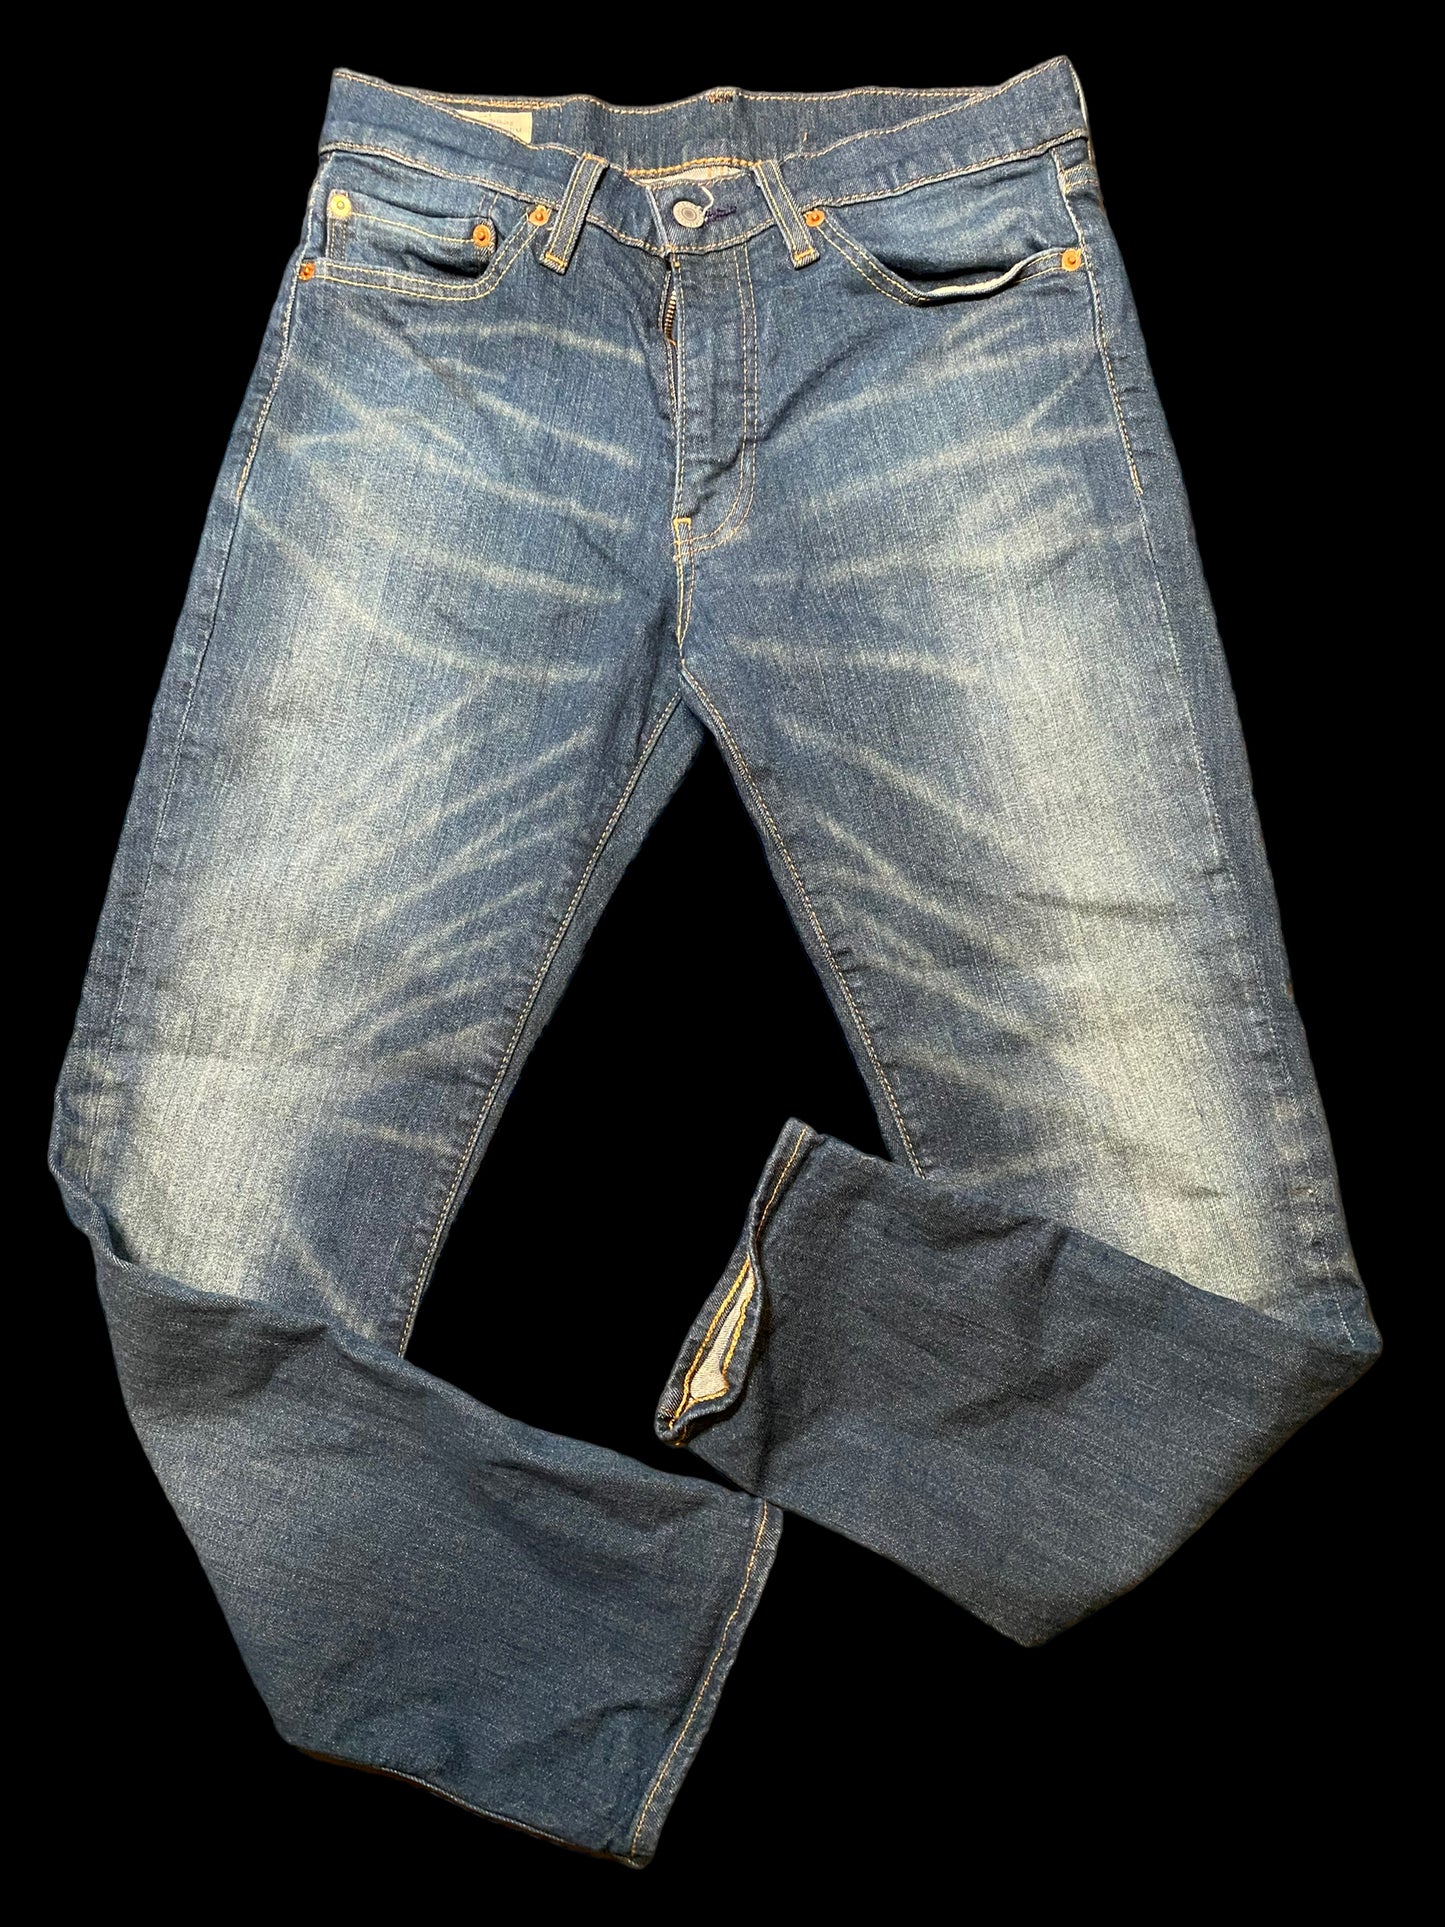 Levi's Premium Denim Jeans